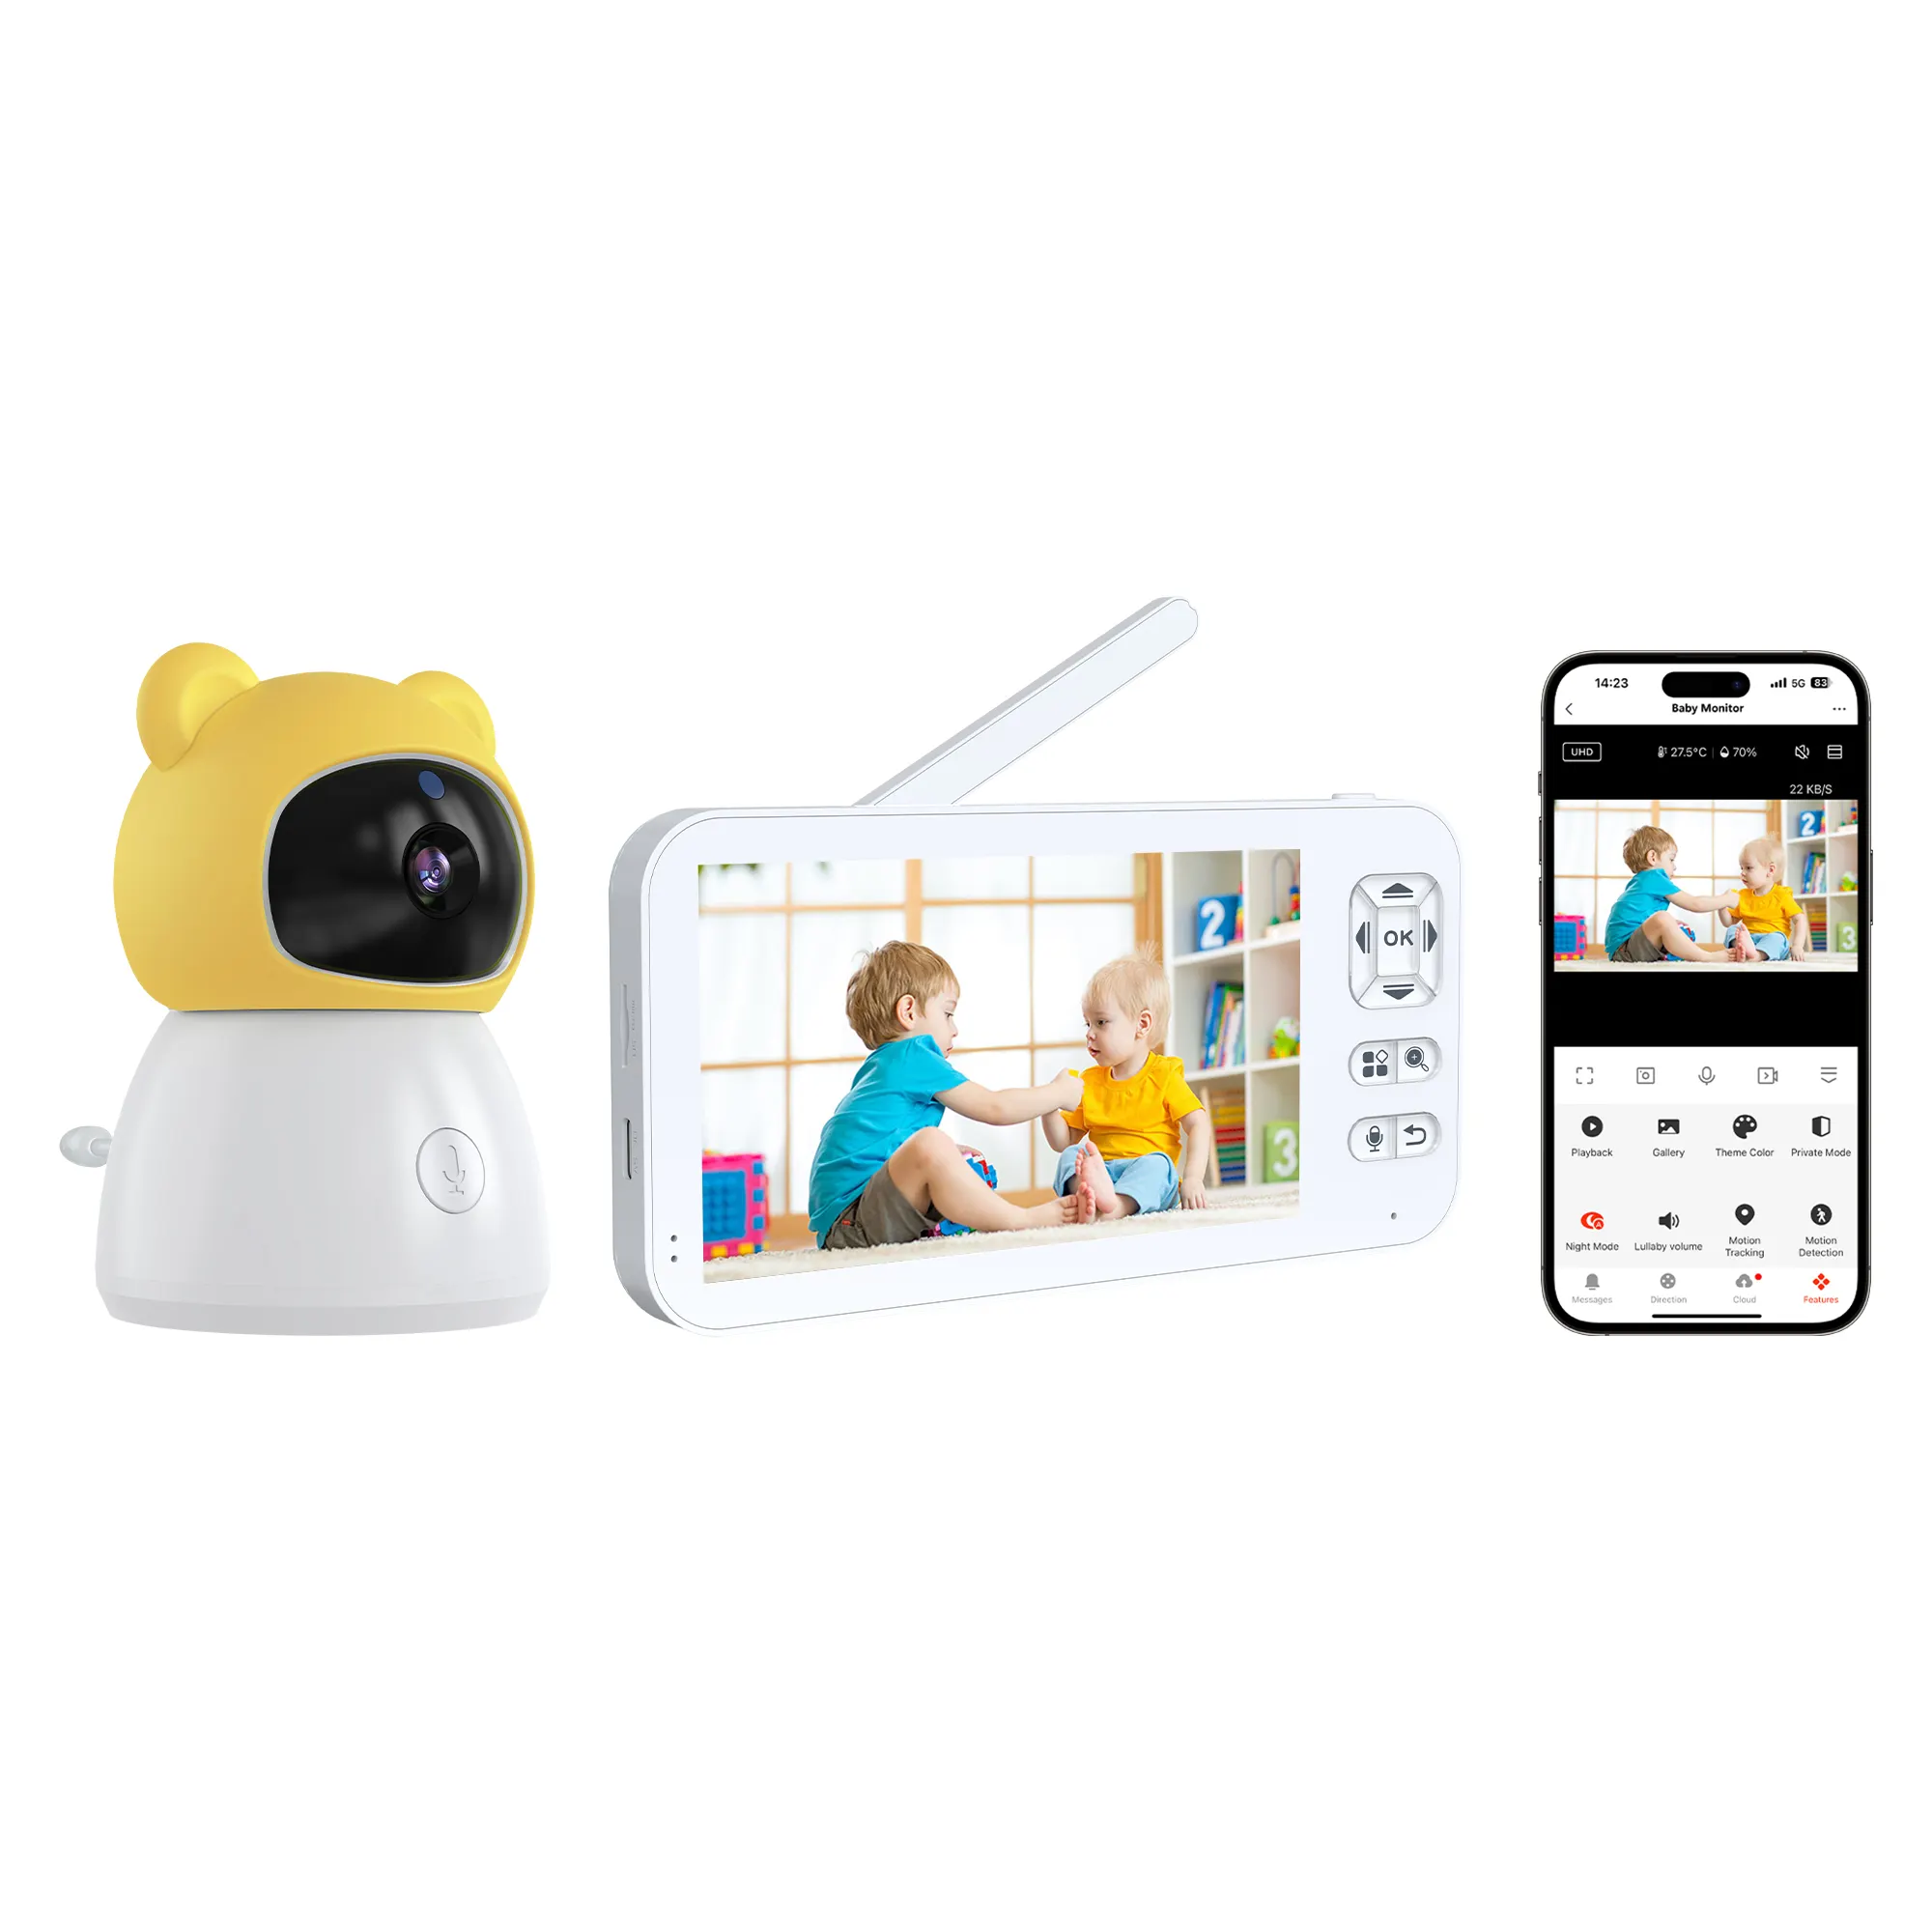 كاميرا مراقبة للأطفال مع شاشة حجمها 5 بوصة تطبيق tuya الذكي للتحكم عن بعد بسعر المصنع وتقنية ODM مع خدمة مخصصة